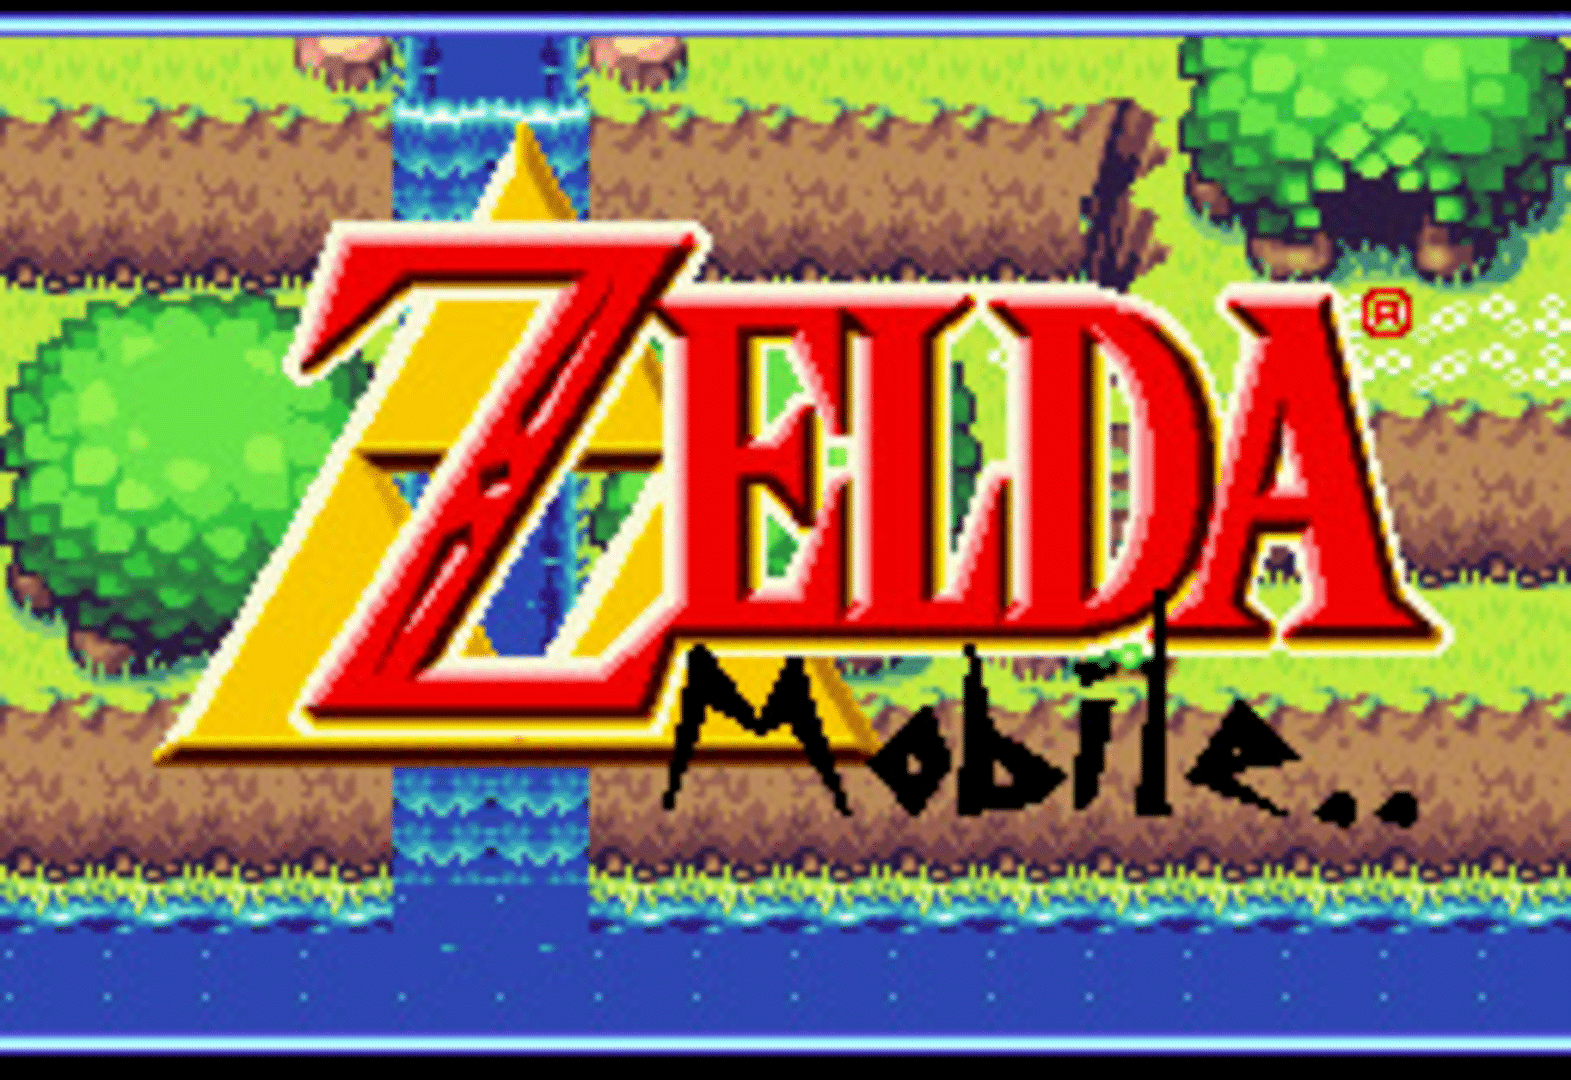 Zelda Mobile screenshot